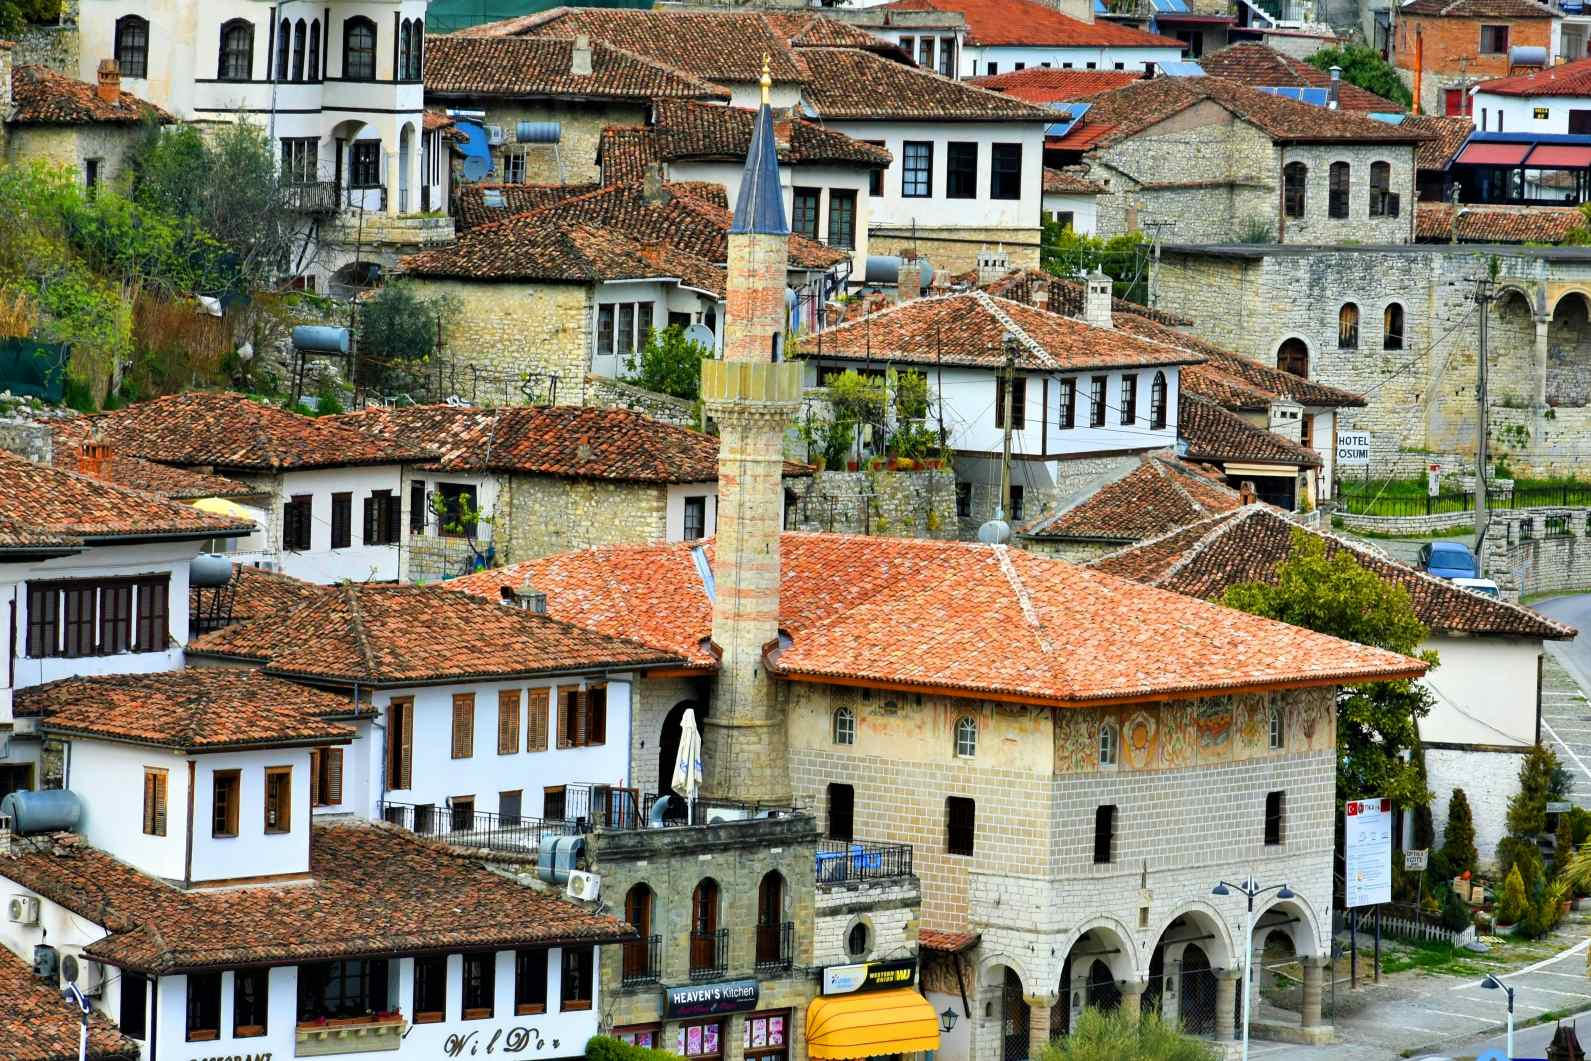 View of the buildings in Berat, Albania